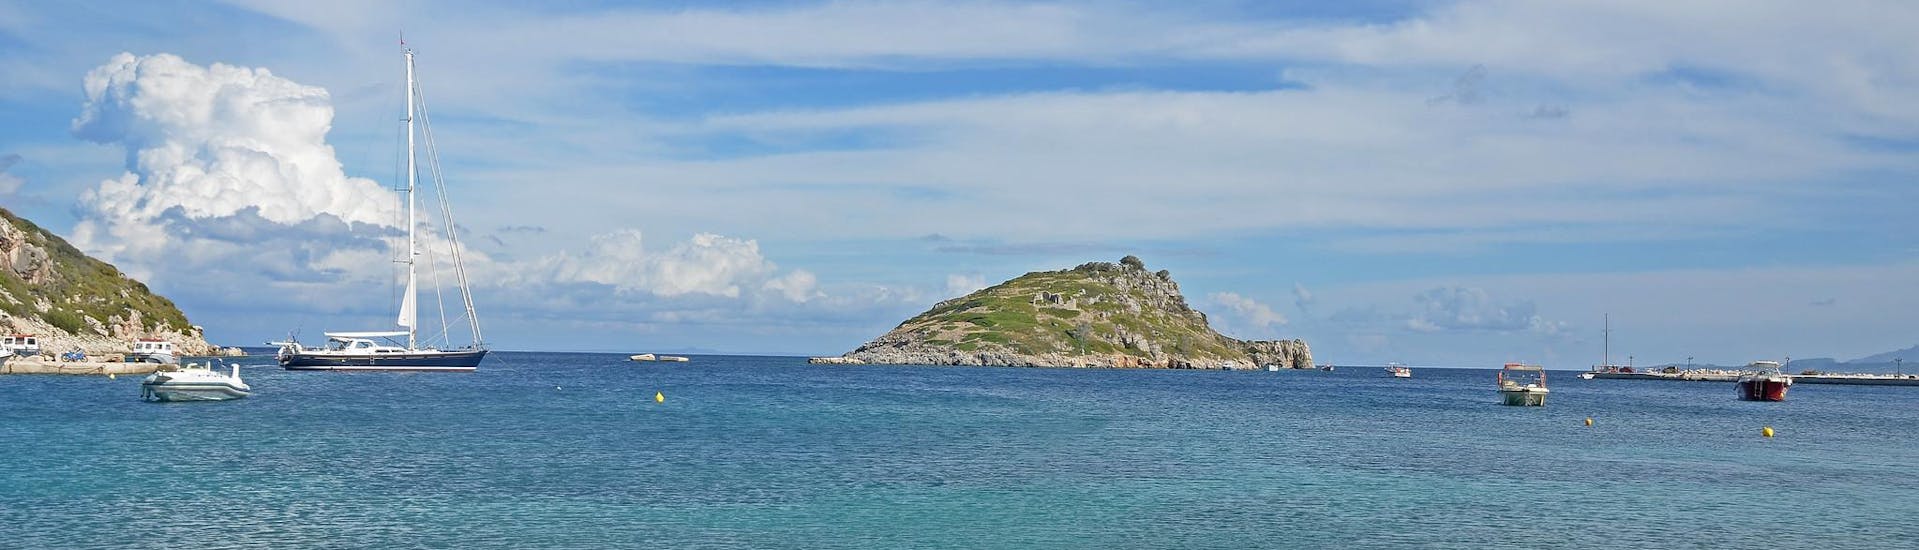 Il porto di Agios Nikolaos a Zante, punto di partenza per le gite in barca nelle Isole Ionie.